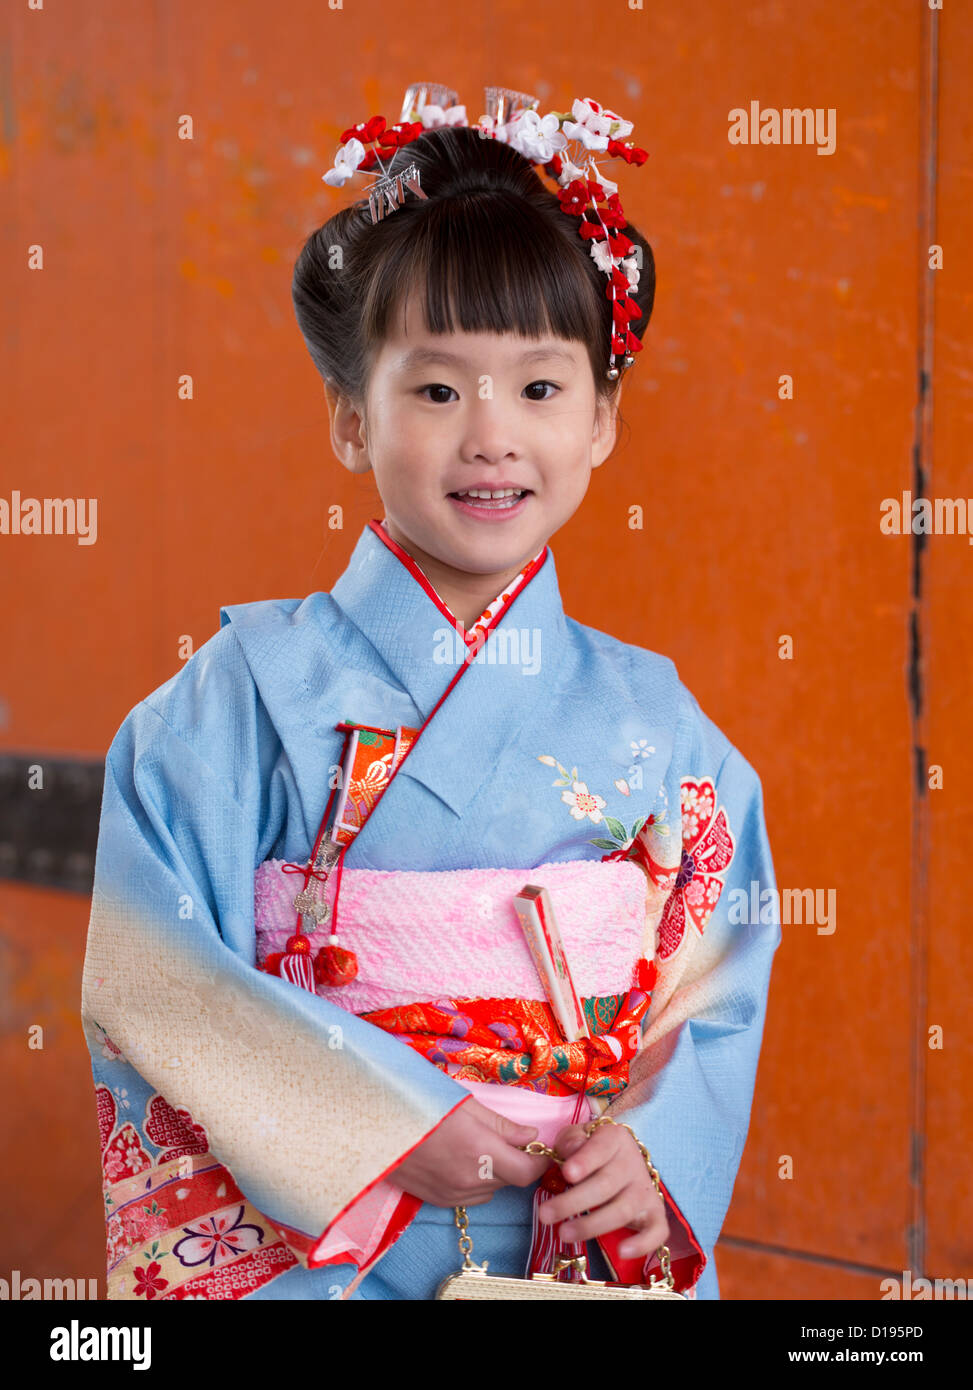 Junges japanisches Mädchen im Kimono und Obi besucht einen Schrein in Kyoto Japan. Kinder im Alter von 7, 5 und 3 Besuch Schreine an ihrem Geburtstag. Stockfoto